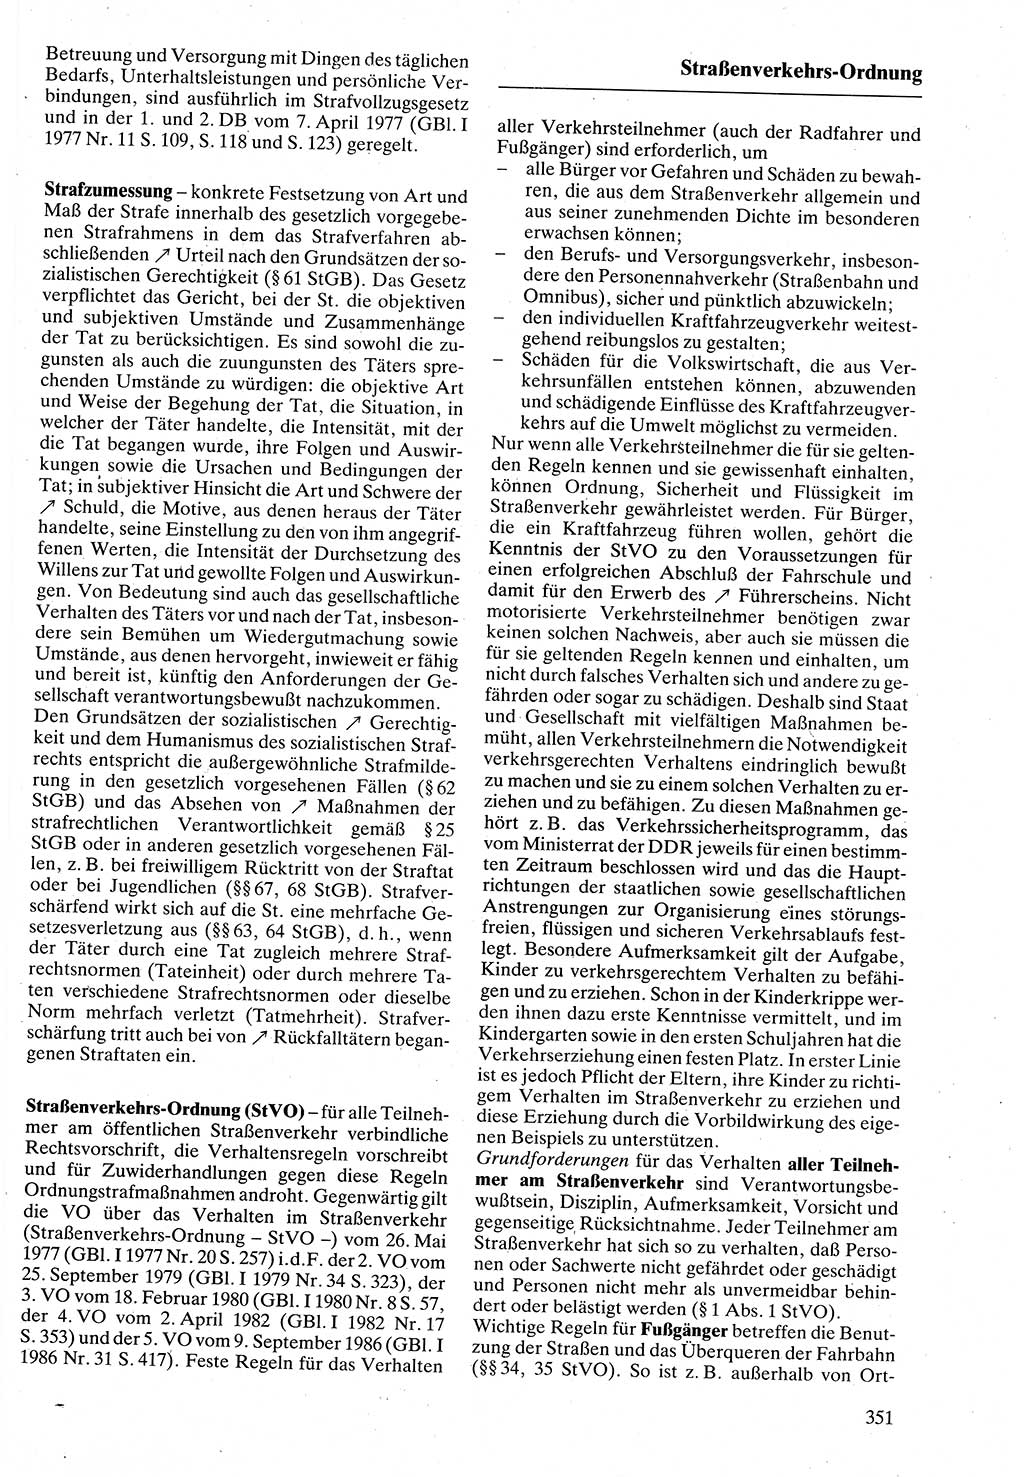 Rechtslexikon [Deutsche Demokratische Republik (DDR)] 1988, Seite 351 (Rechtslex. DDR 1988, S. 351)